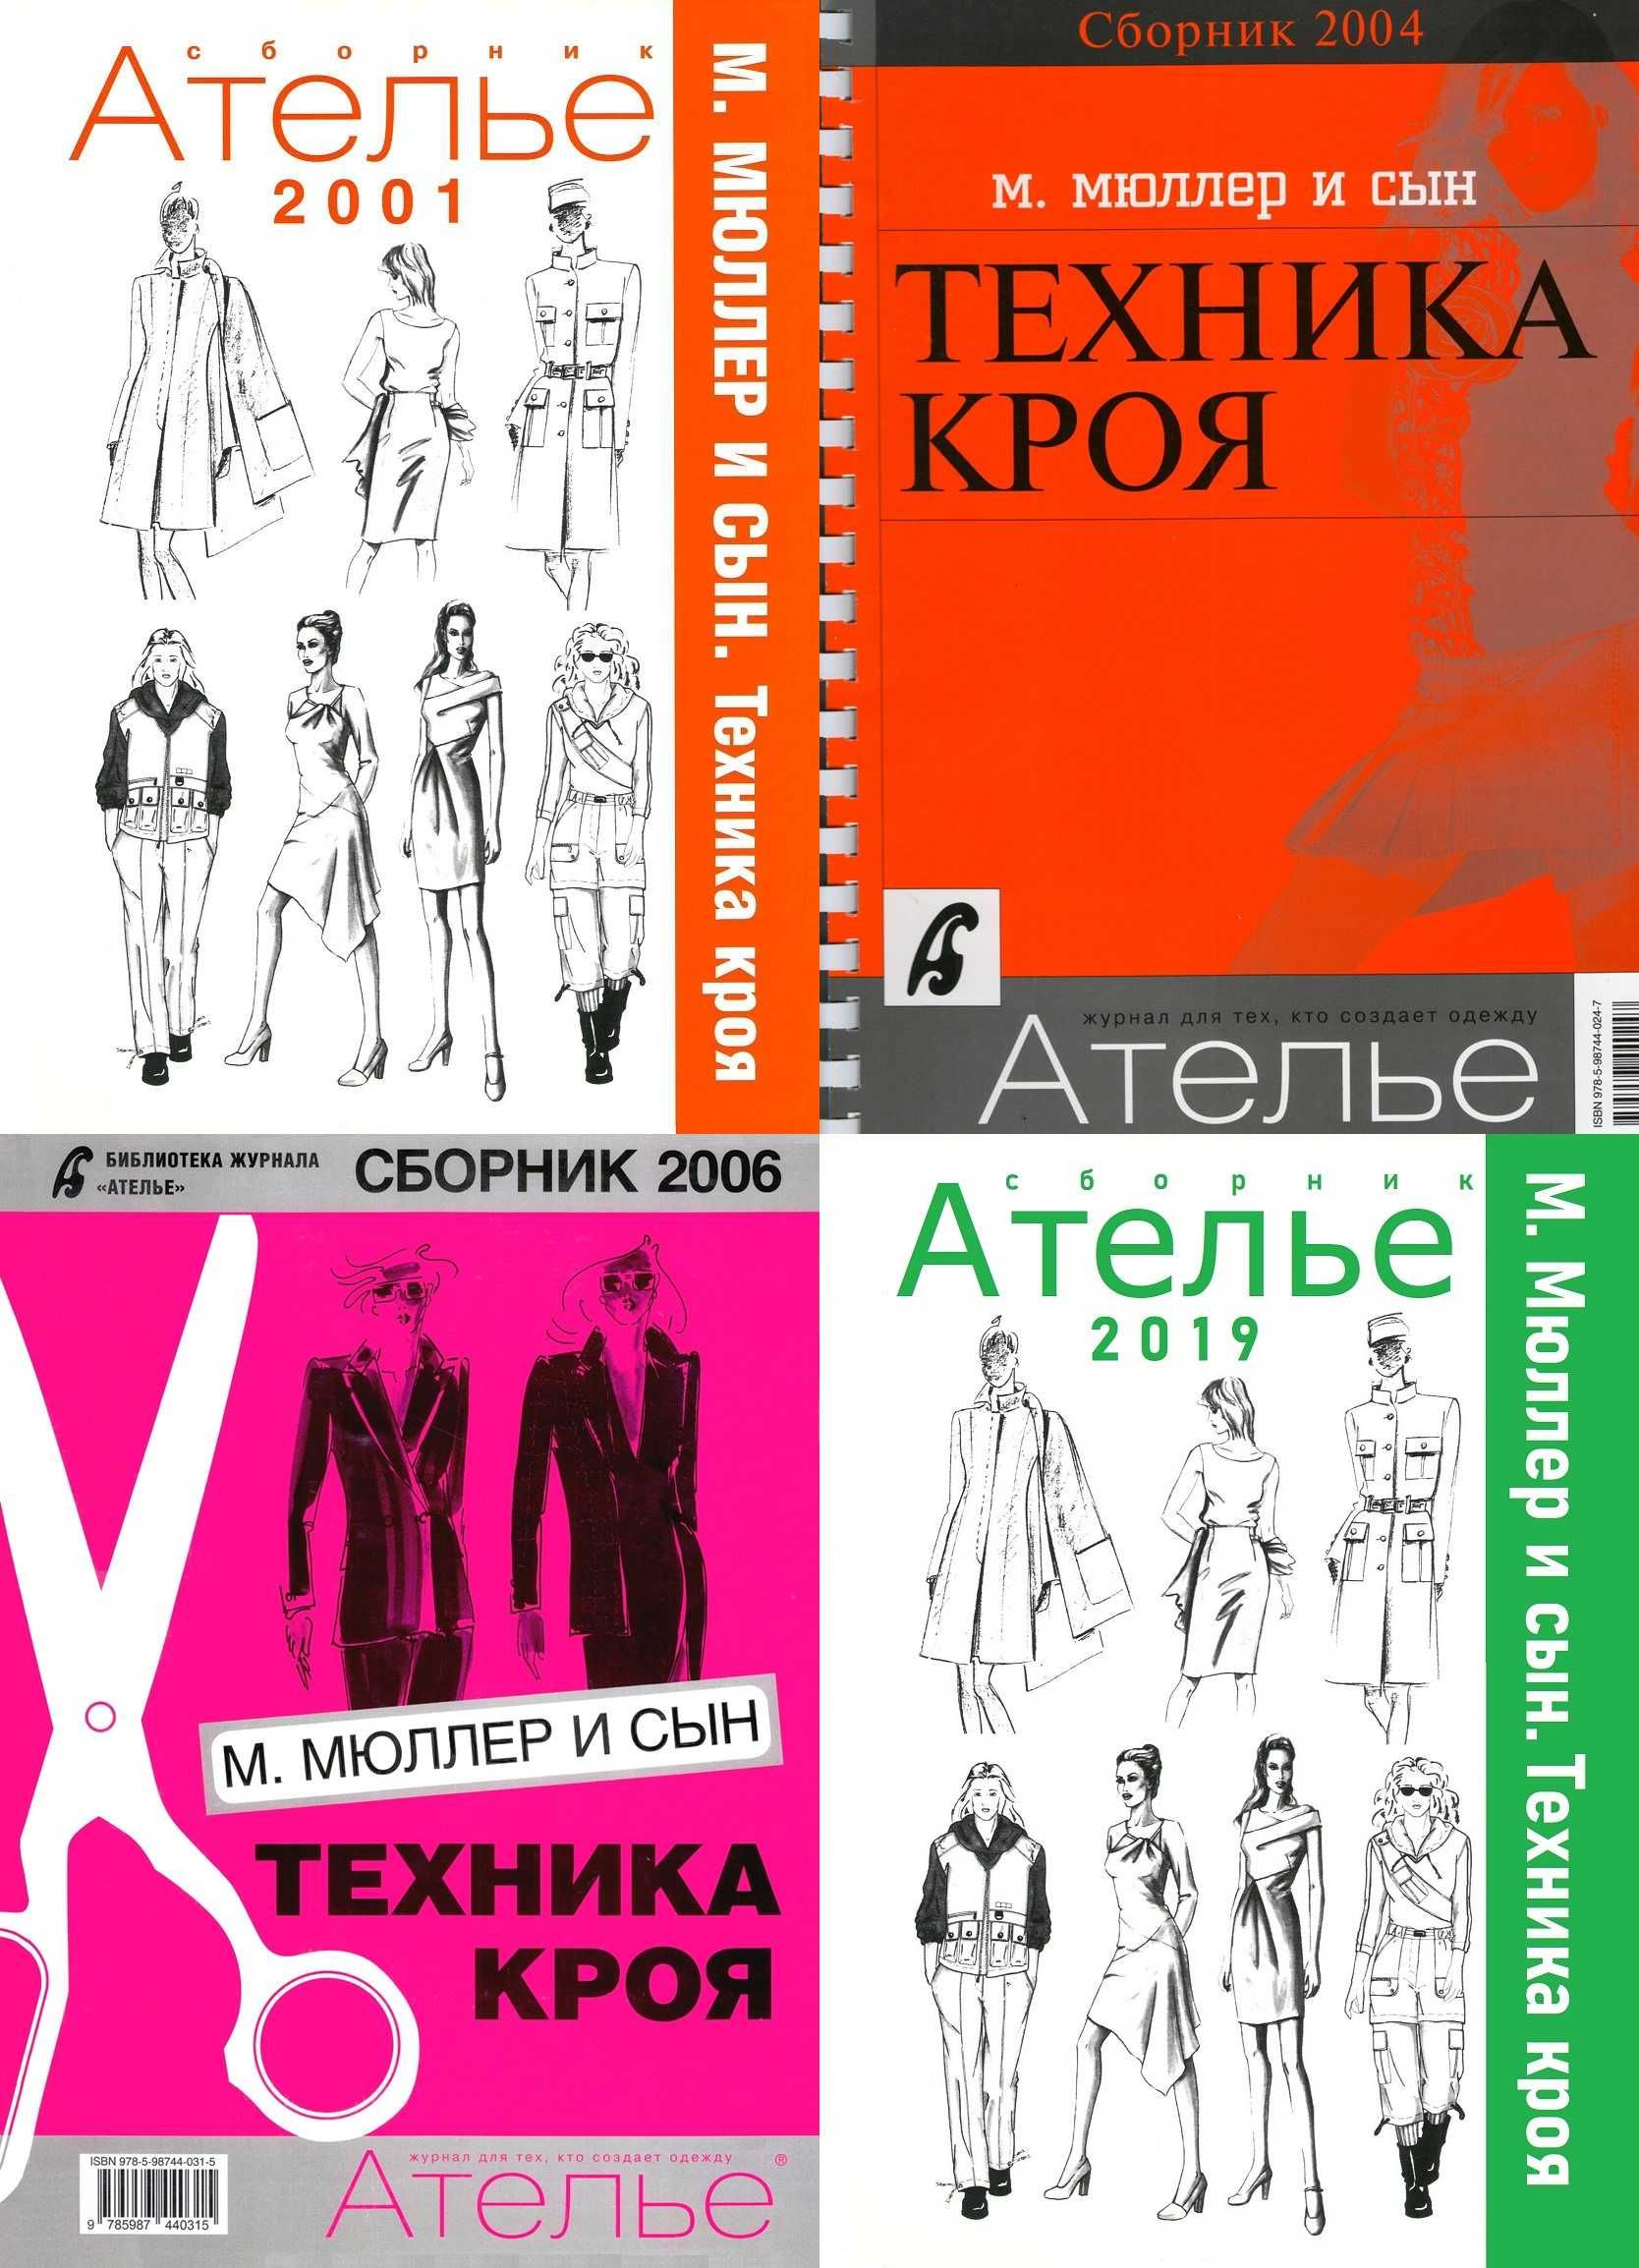 Збірники журналу Ательє 2001 -2019 роки